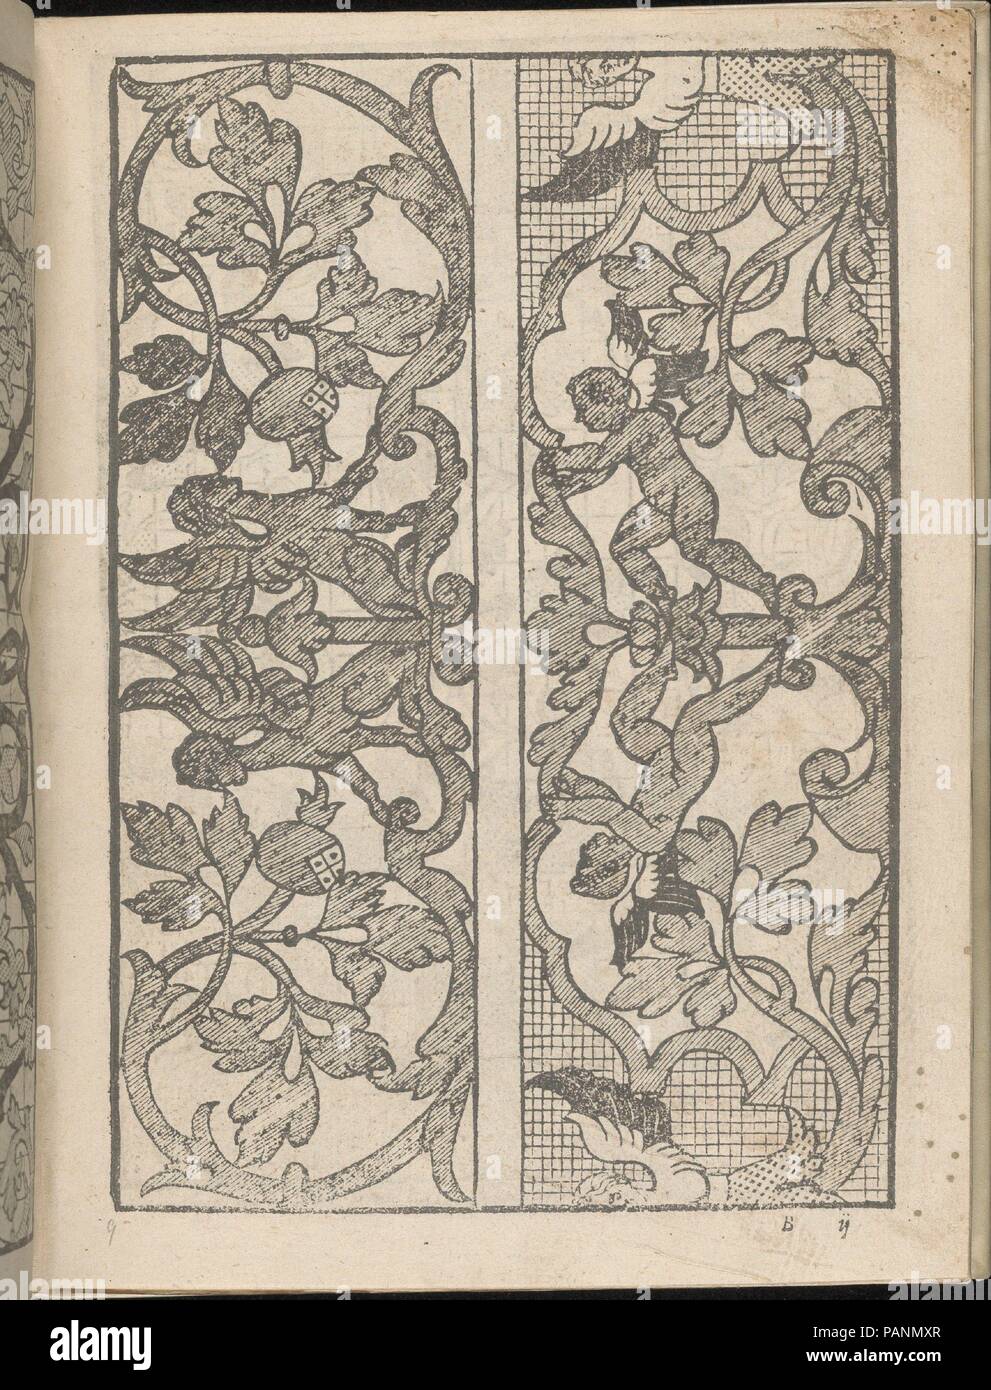 Lucidario di Recami, page 9 (verso). Designer : Iseppo Foresto (Italien, Venise, 1557 active). Dimensions : hors tout : 7 7/8 x 5 7/8 in. (20 x 15 cm). Publié dans : Venise. Editeur : Jeronimo Calepino , 1564. Date : 1564. Conçu par Iseppo Foresto, publié par Jeronimo Calepino, 1564. De haut en bas, et de gauche à droite : Design composé de 3 colonnes verticales imprimée sur une grille. Colonne de gauche est décoré de 2 vignes entrelacés qui forment des ovales contenant des feuilles et des fleurs en pointillé. Colonne du milieu est orné d'un élément circulaire centrale qui est illustré avec 2 Oiseaux dans son intime s Banque D'Images